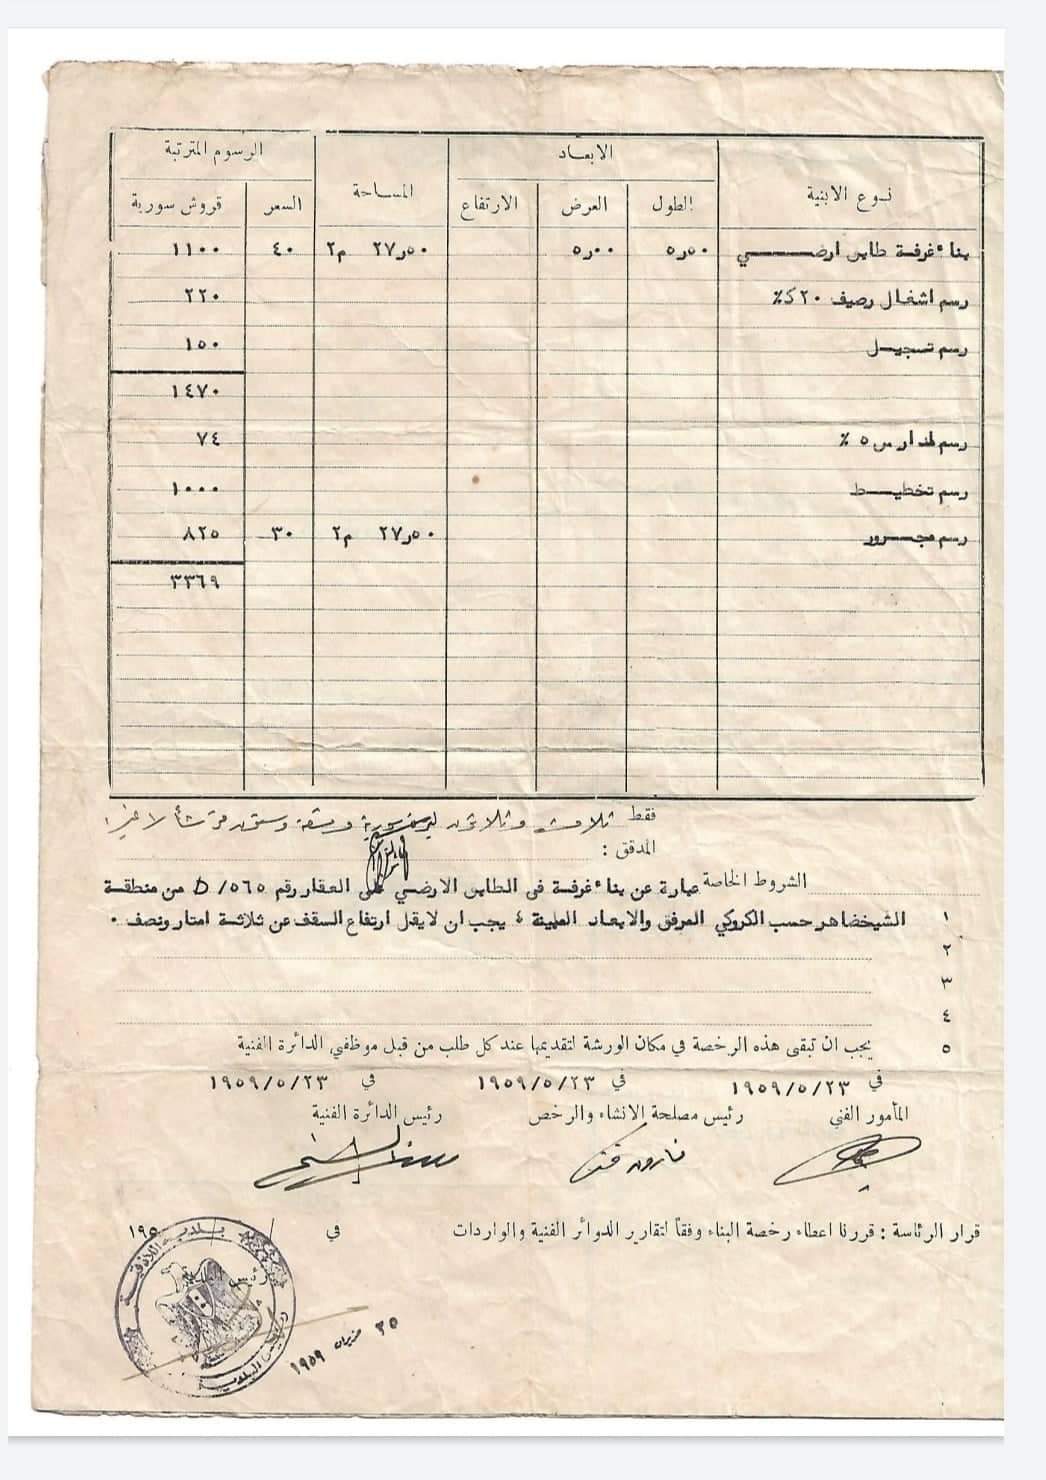 التاريخ السوري المعاصر - رخصة بناء عقار في منطقة الشيخضاهر في اللاذقية عام 1959م